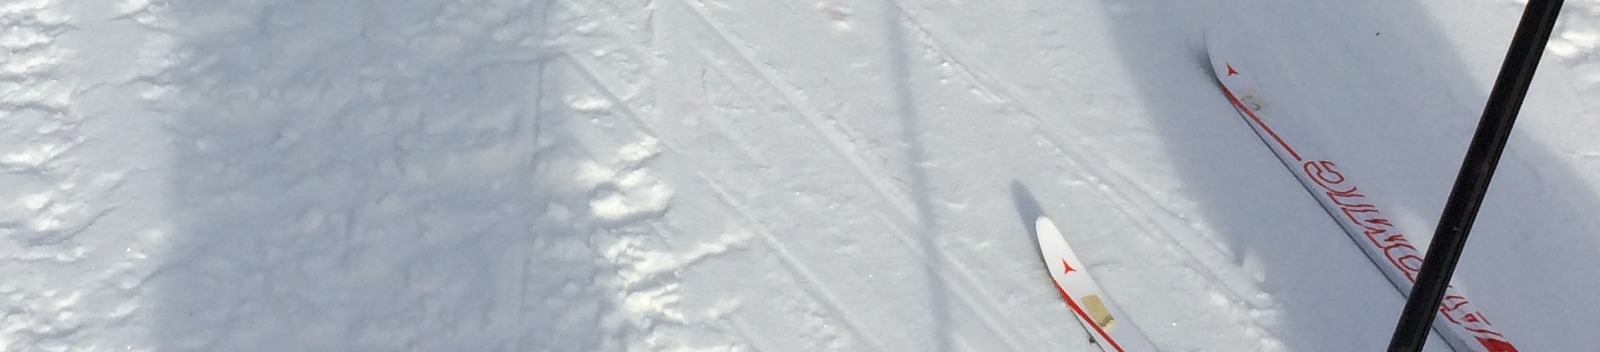 Skiing in Longlac